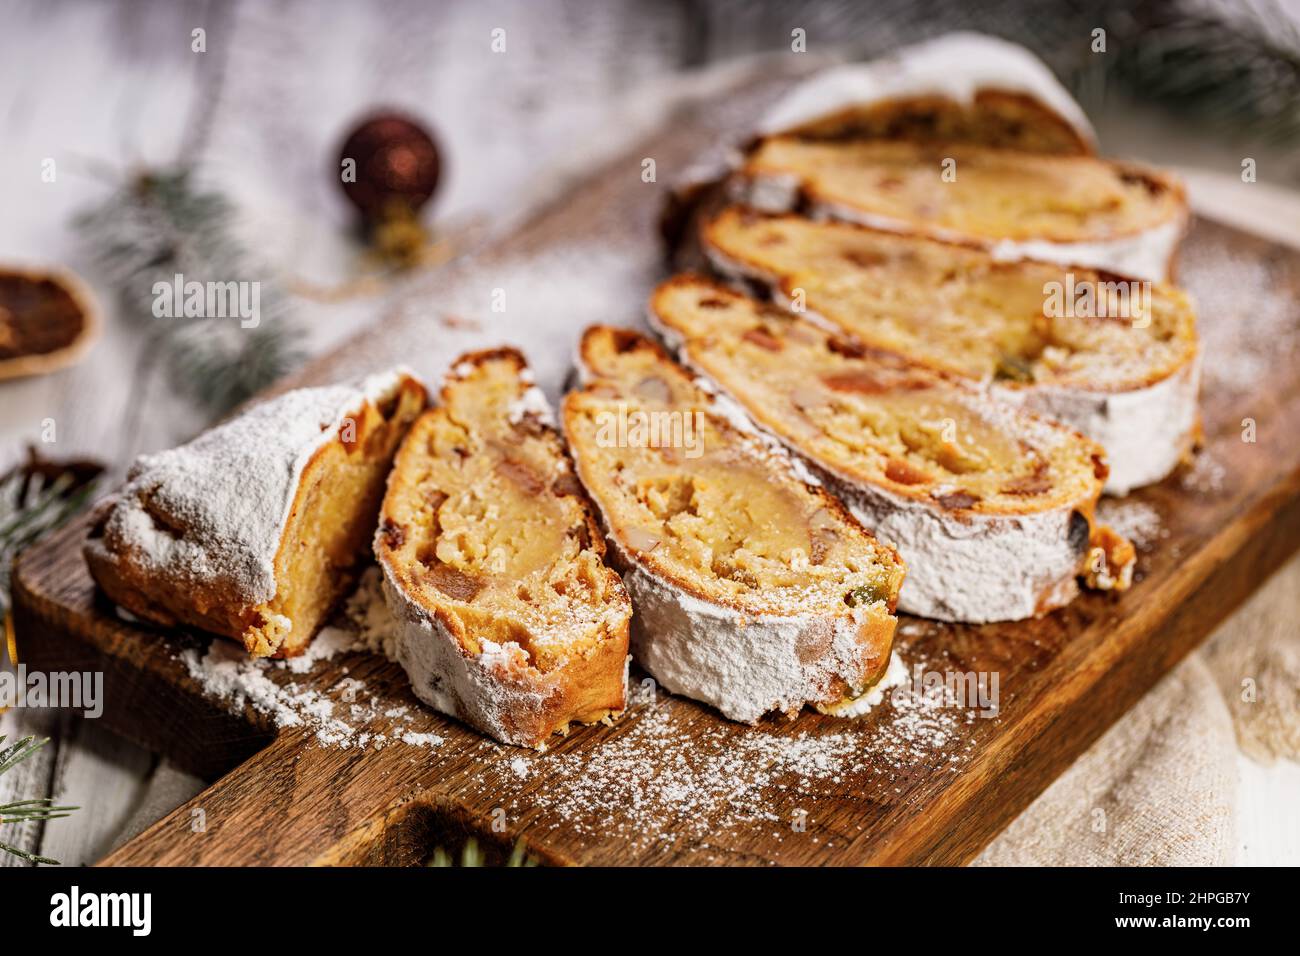 Stollen di Natale su un tagliere. Sfondo bianco tavolo in legno. Tradizionale dolce natalizio con marzapane, noci, uvetta e frutta secca. Foto Stock